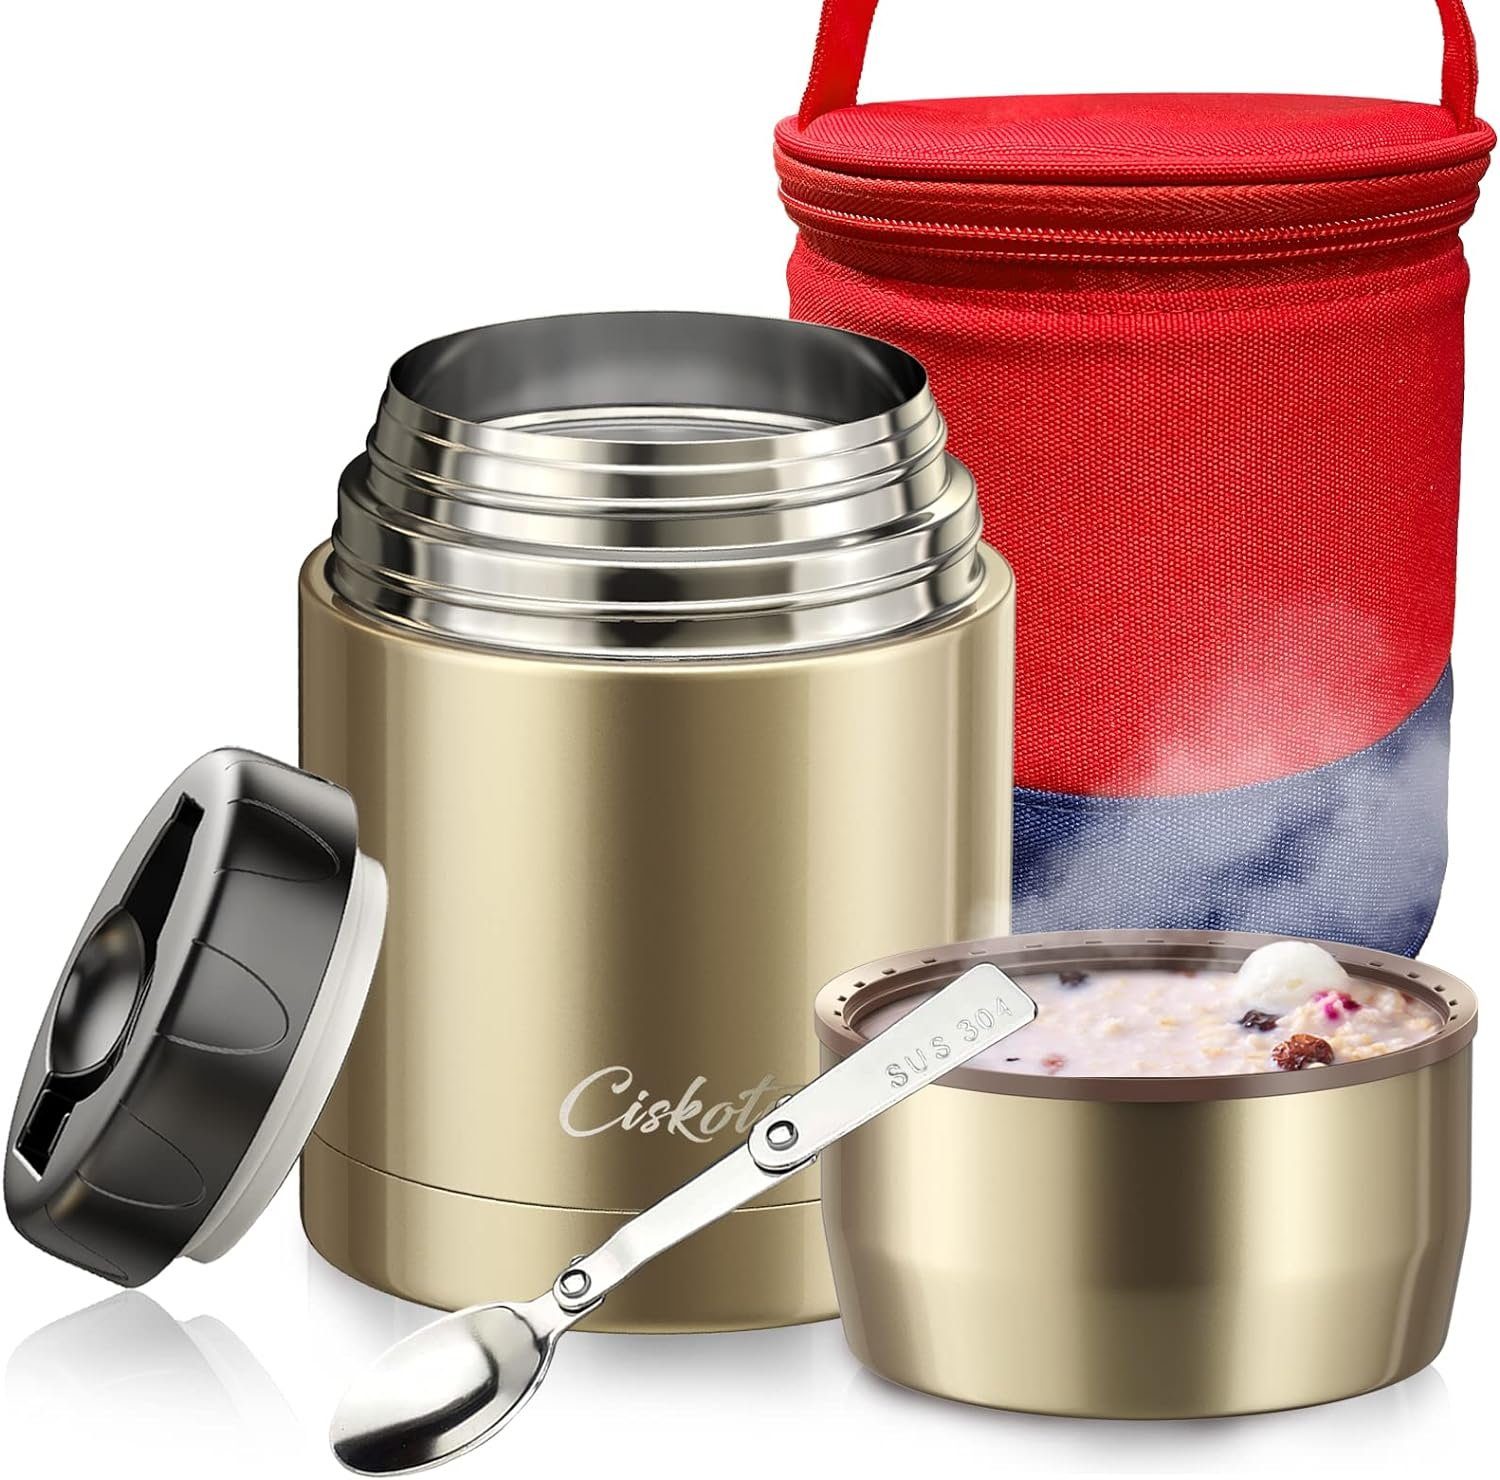 Ciskotu Lunchbox Thermo-Speisebehälter 800 ml, mit klappbarem Löffel, 9 Stunden heiß, 14 Stunden kalt Champagne Gold